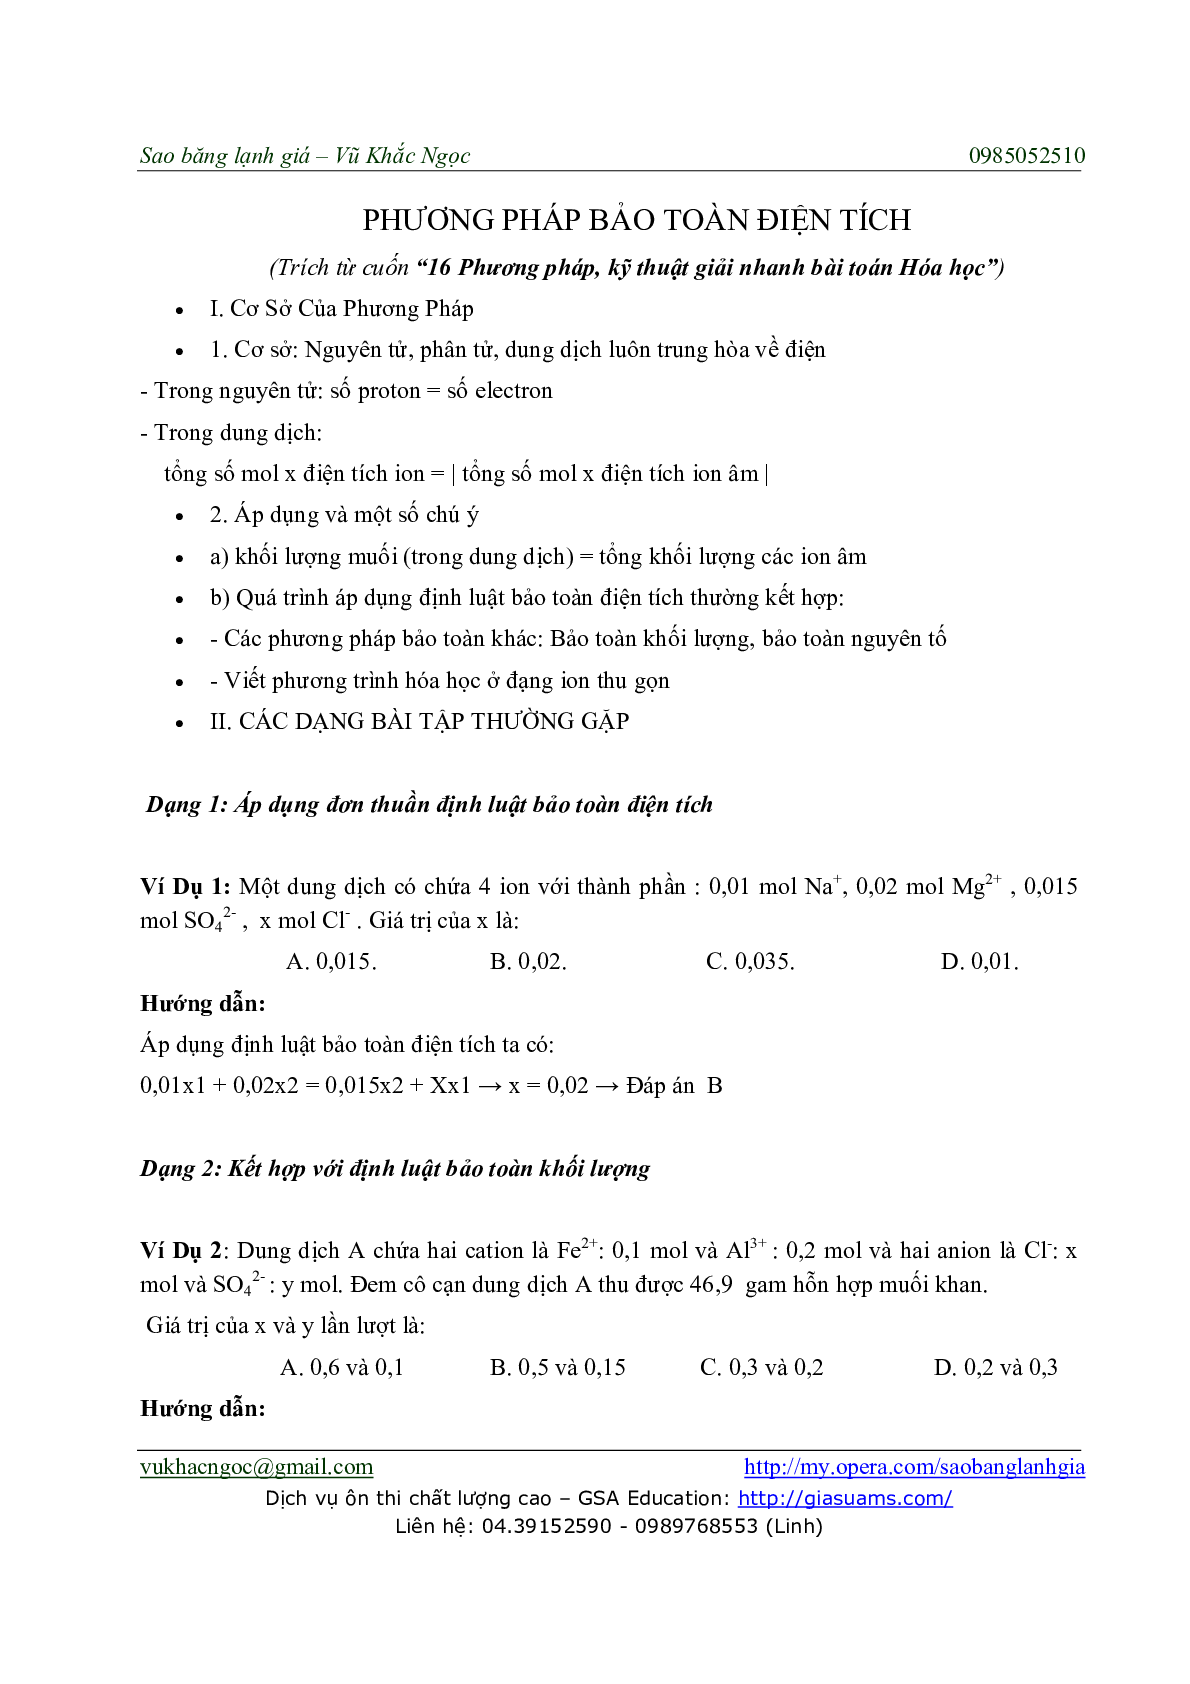 Chuyên đề Phương pháp Bảo toàn điện tích môn Hóa học lớp 11 (trang 1)